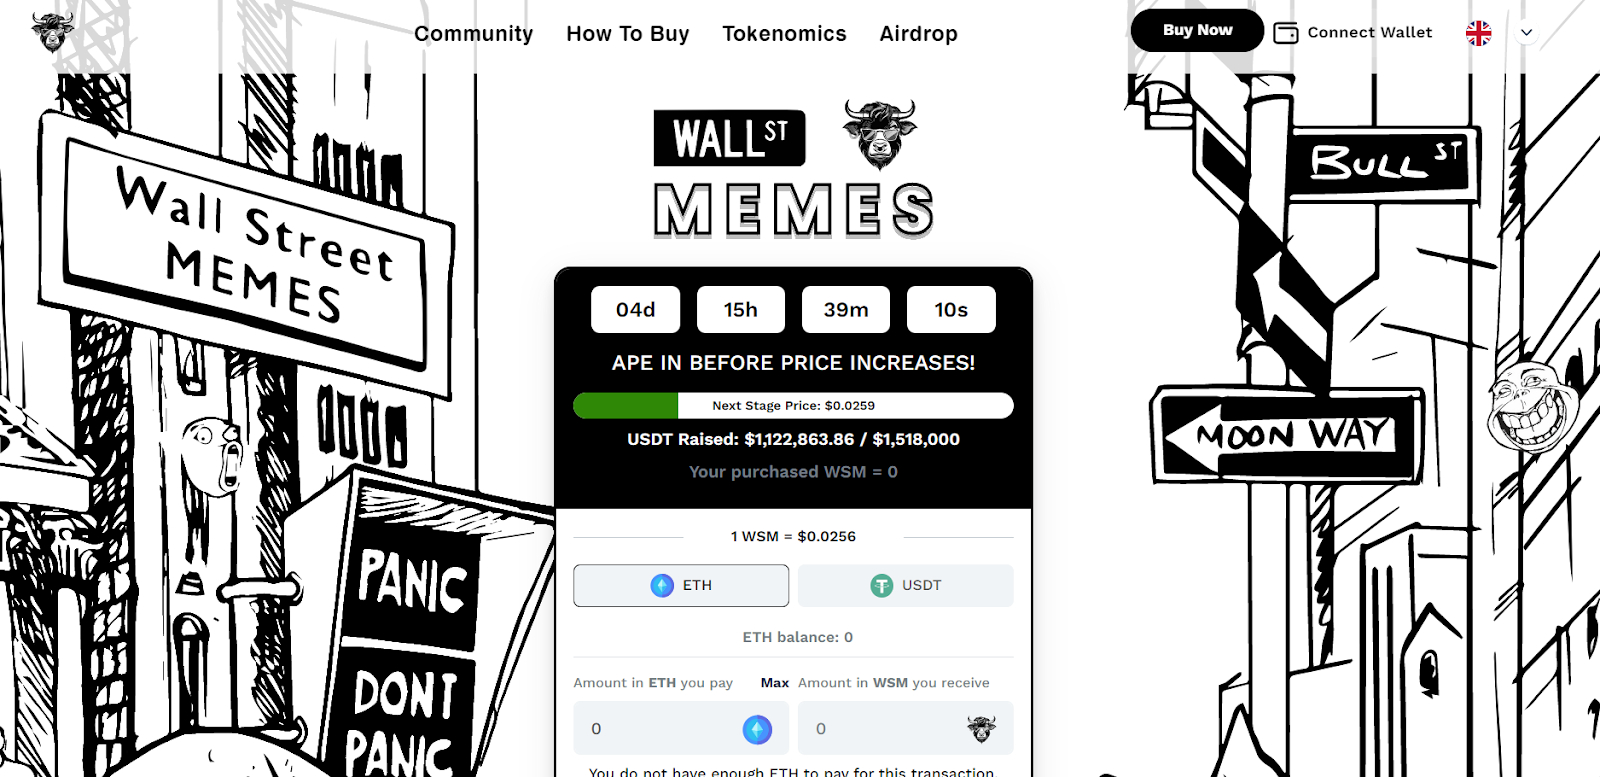 Wall Street Memes Presale vliegt voorbij $1 miljoen door investeerders die mee willen doen aan de beste meme coin sinds jaren